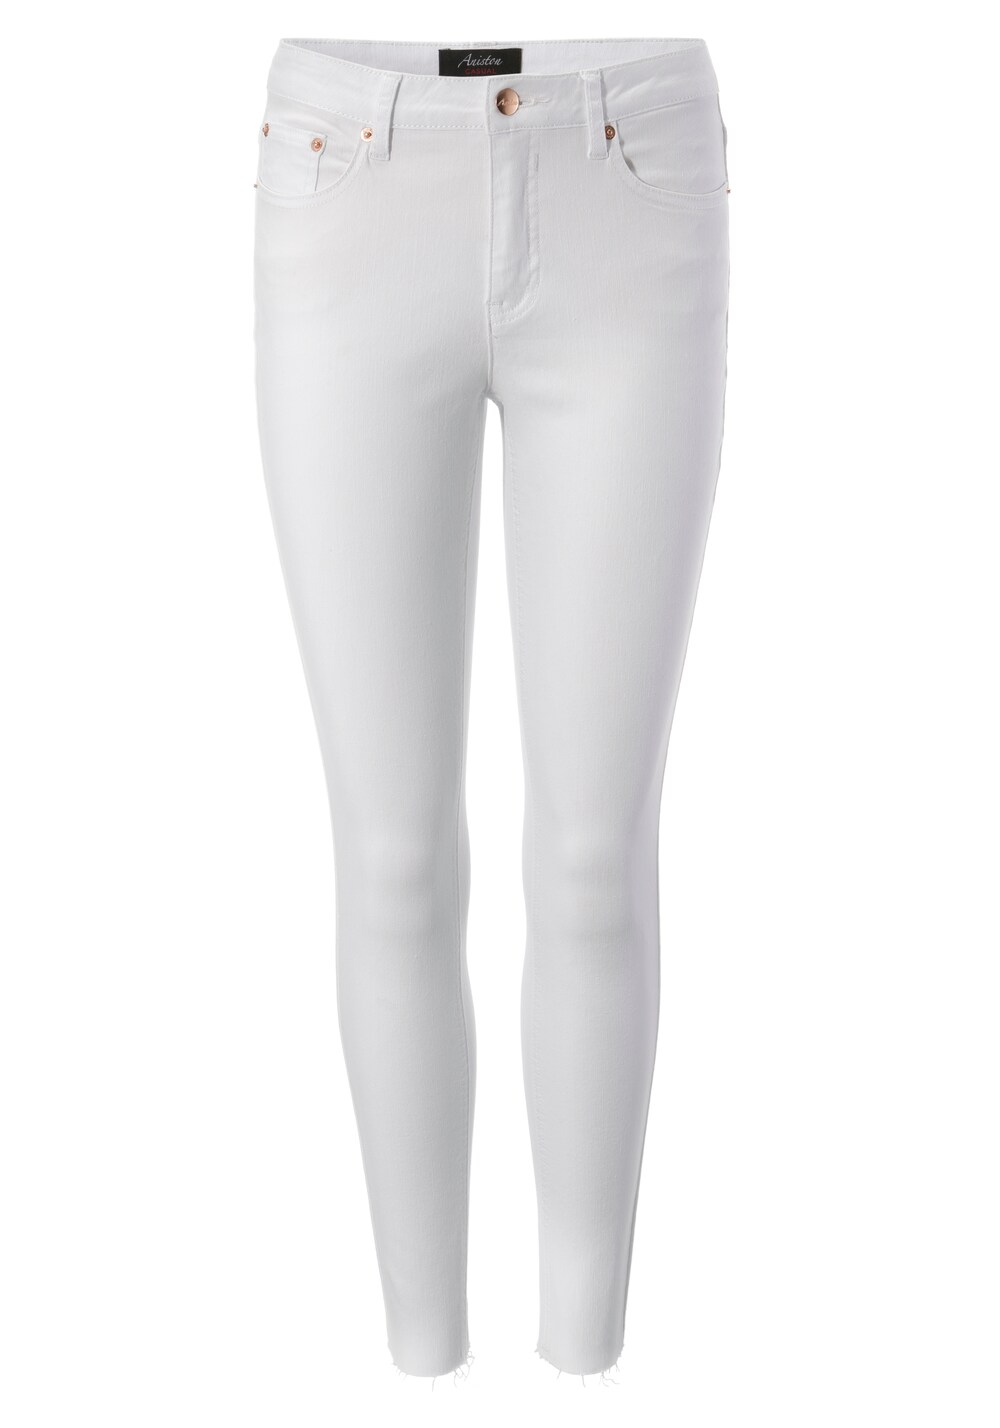 Узкие джинсы Aniston Casual, белый